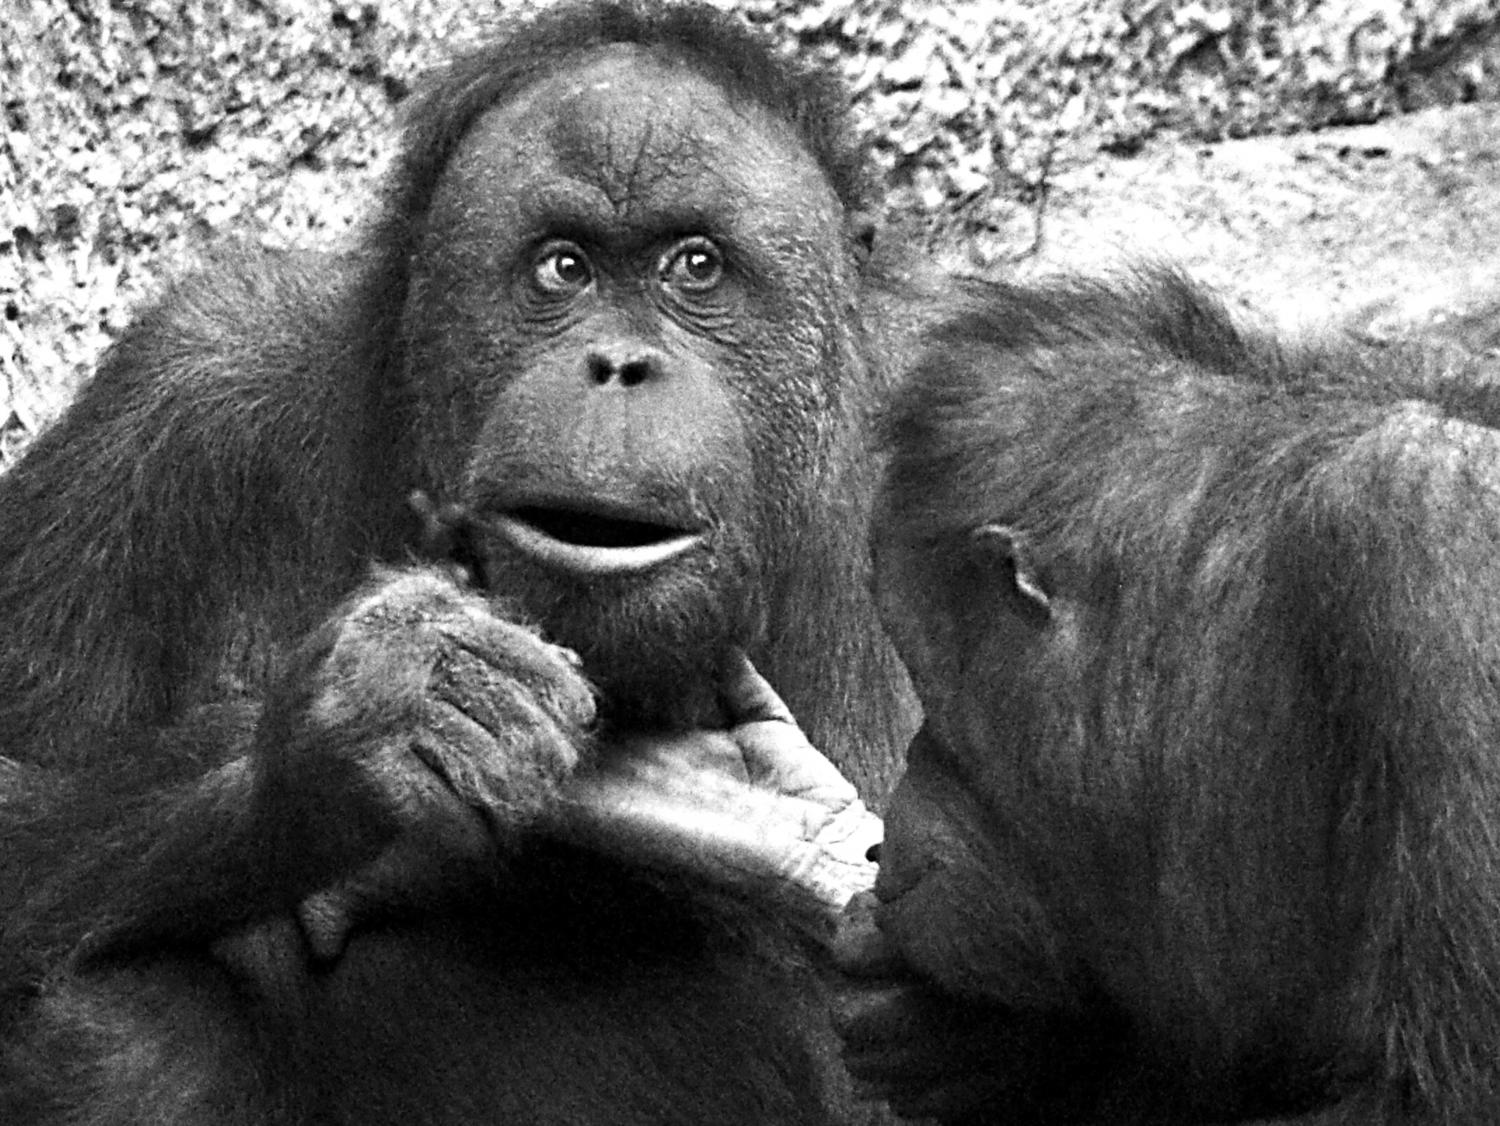 Affen (Orang Utans): Schau mir in die Augen, Großer! (sw